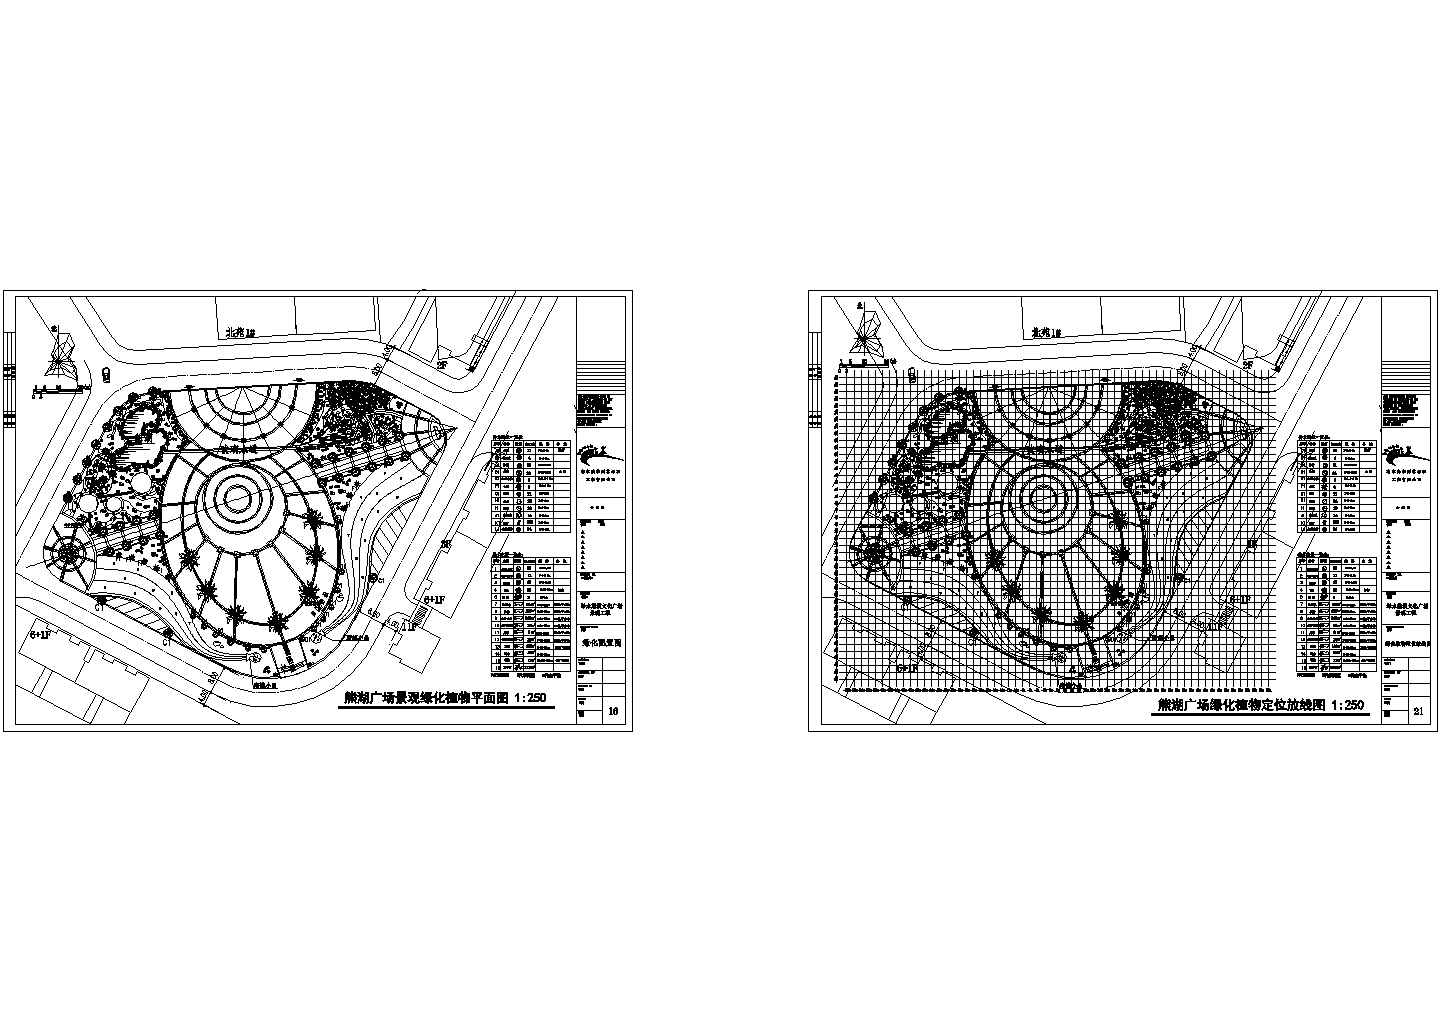 熊湖广场绿化植物定位放线图和总平面广场材质CAD施工图